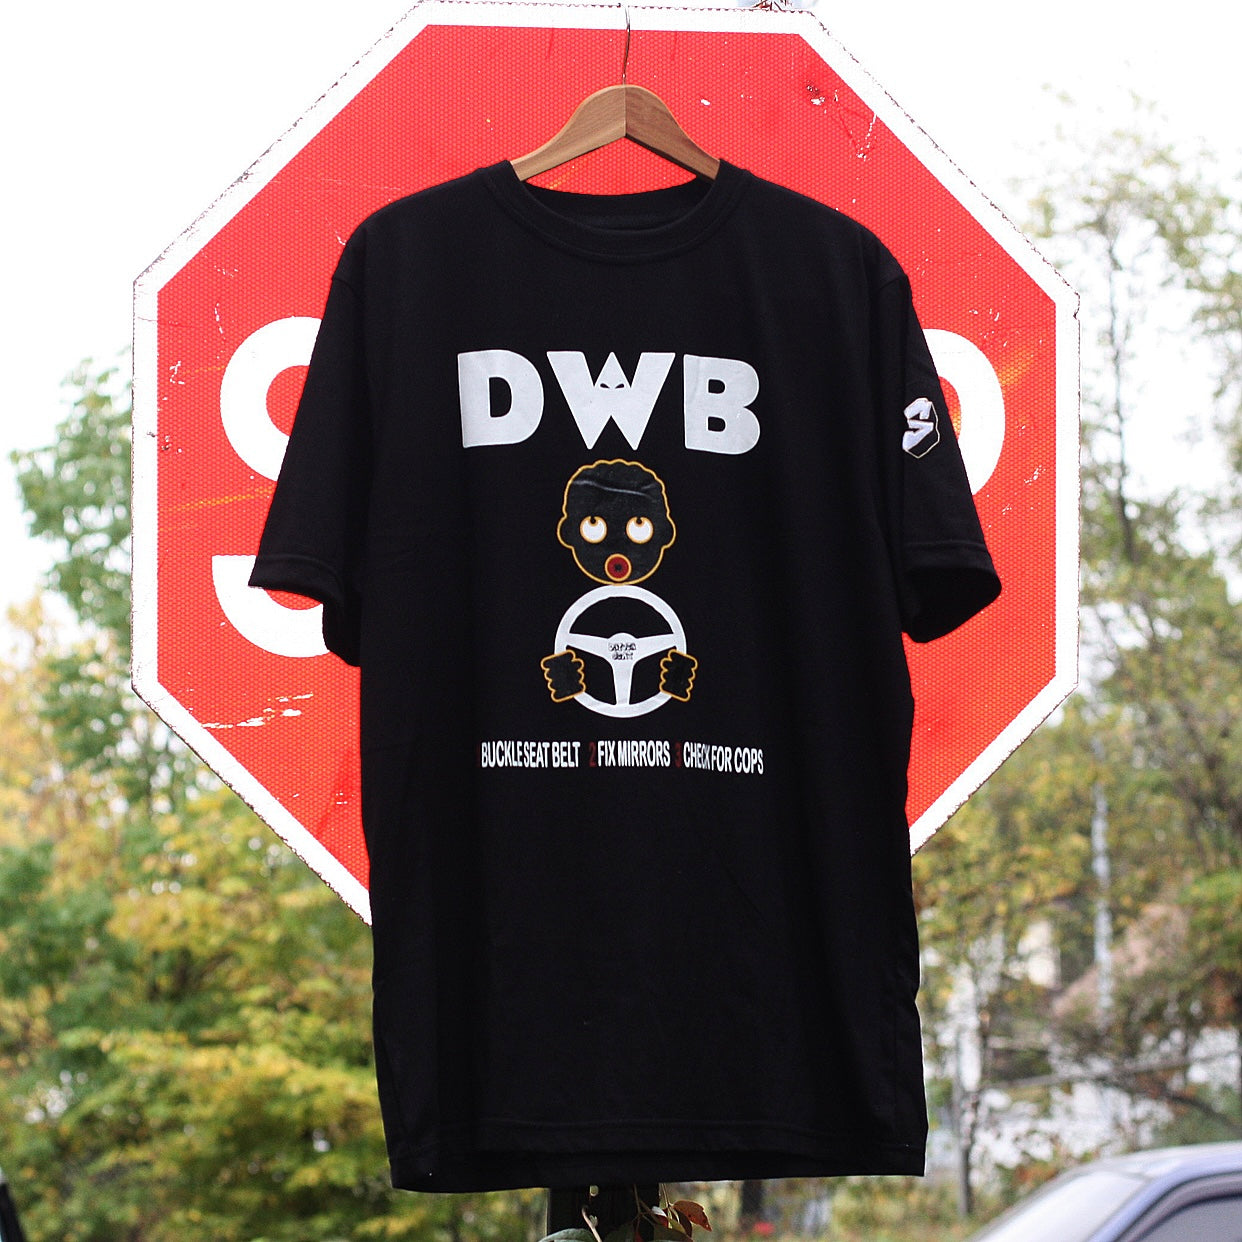 DWB Tee - Black